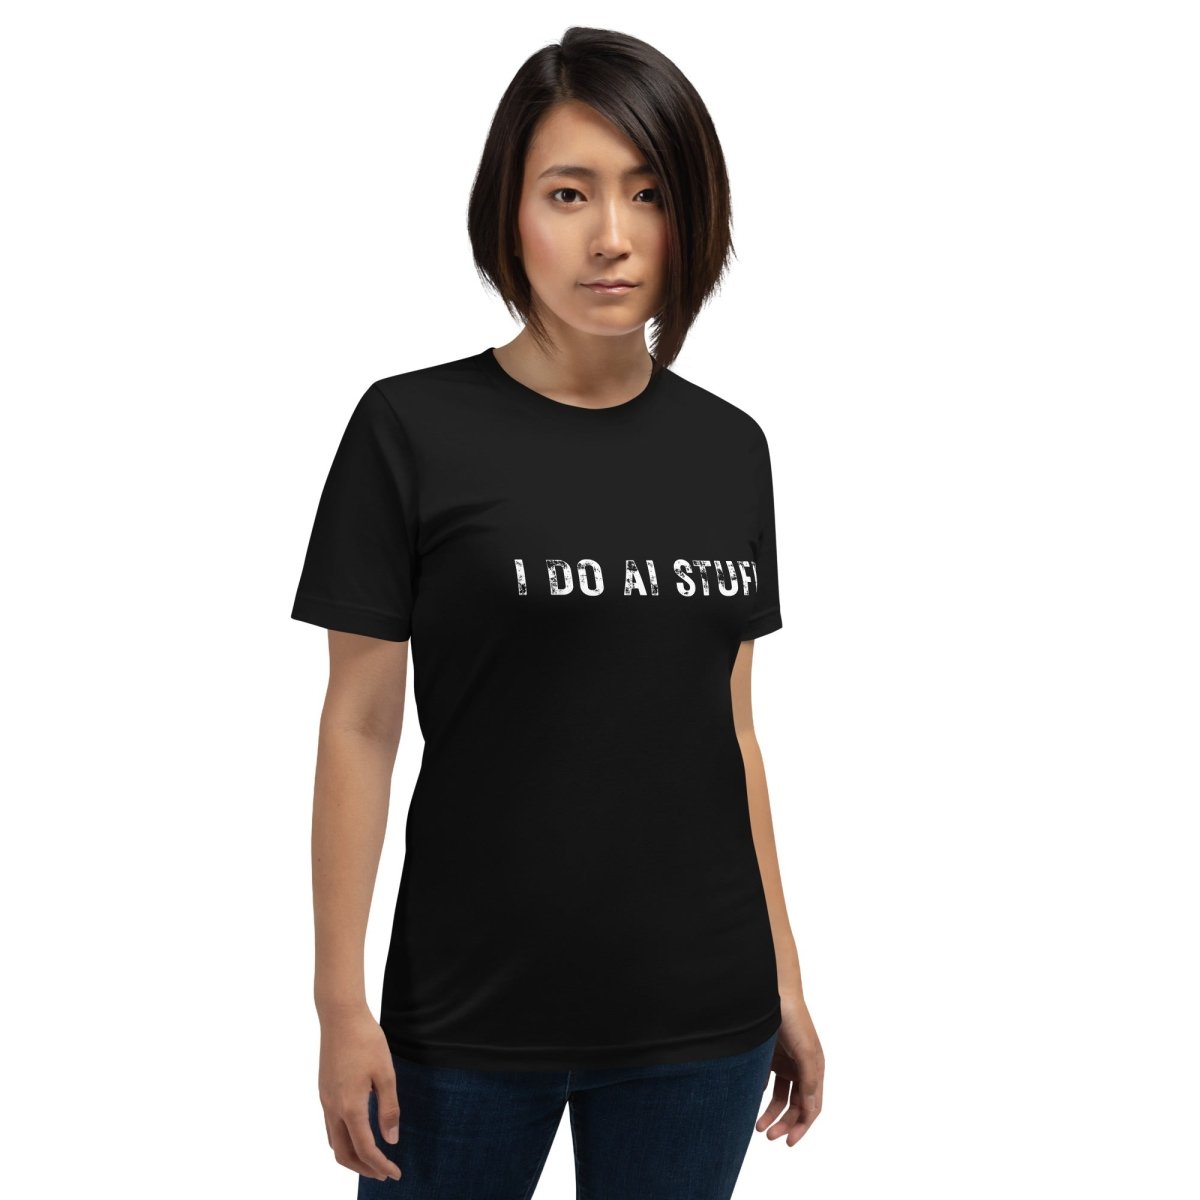 I Do AI Stuff T - Shirt (unisex) - Black - AI Store